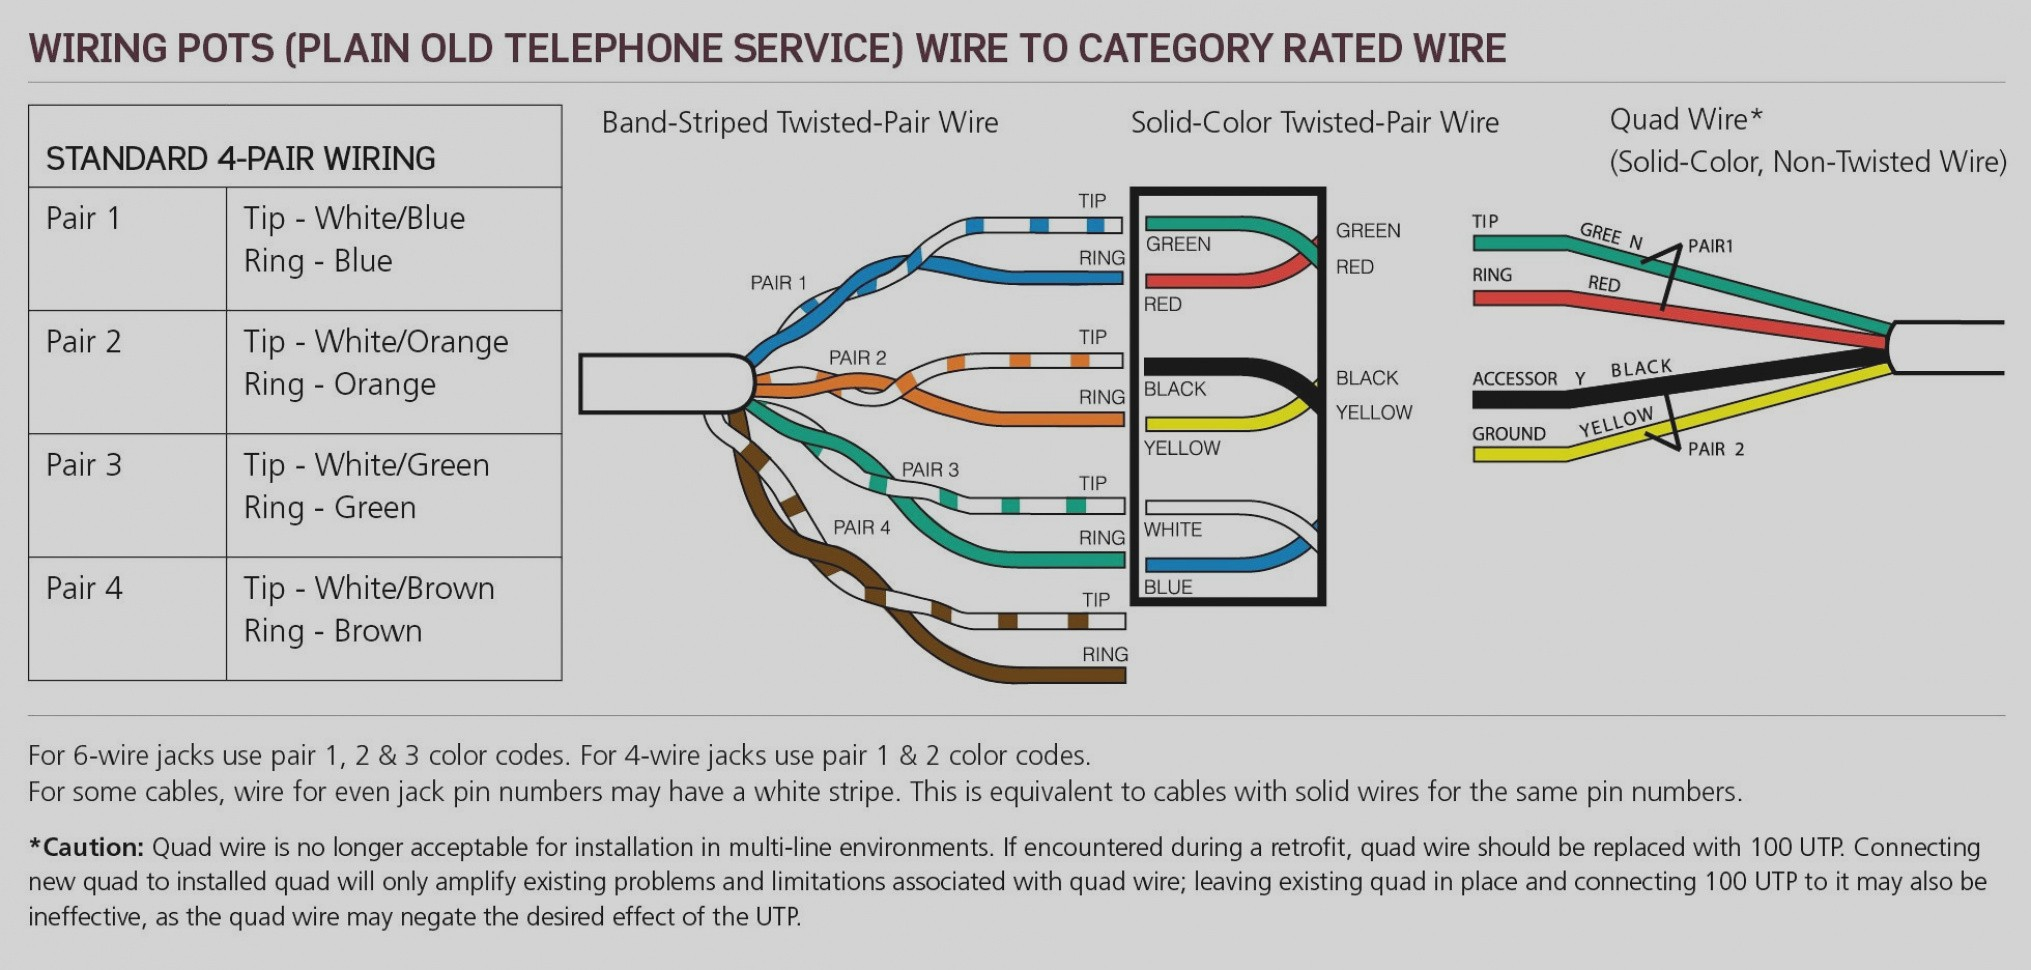 Wiring Rj45 Phone Cord - Wiring Diagrams Hubs - Cat 6 Wiring Diagram Rj45